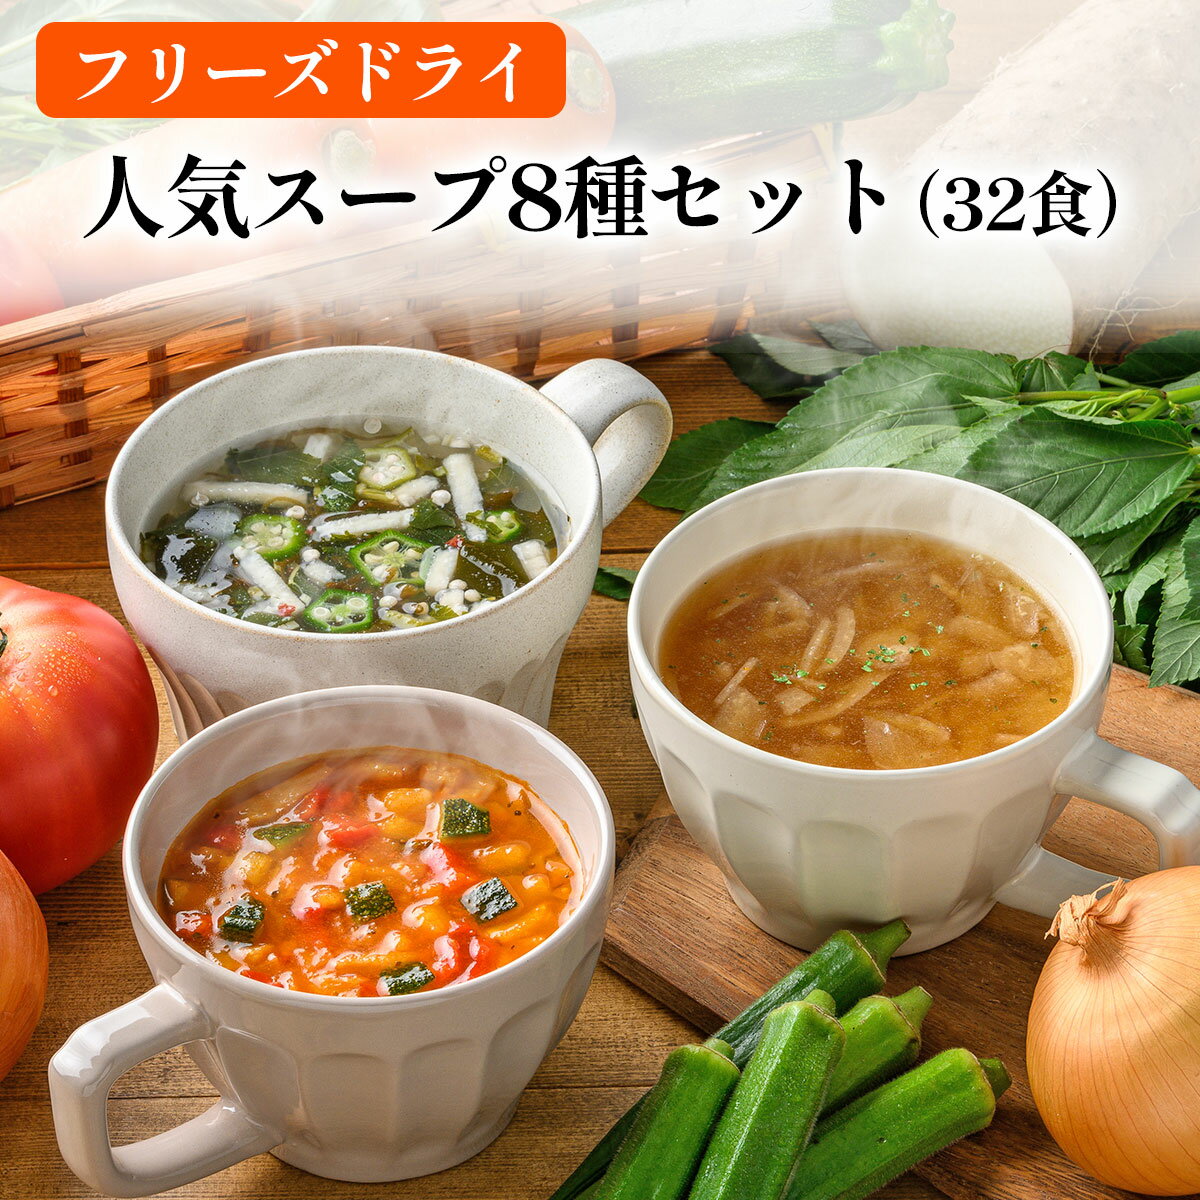 【ふるさと納税】毎日の食卓を彩るフリーズドライ人気スープ8種